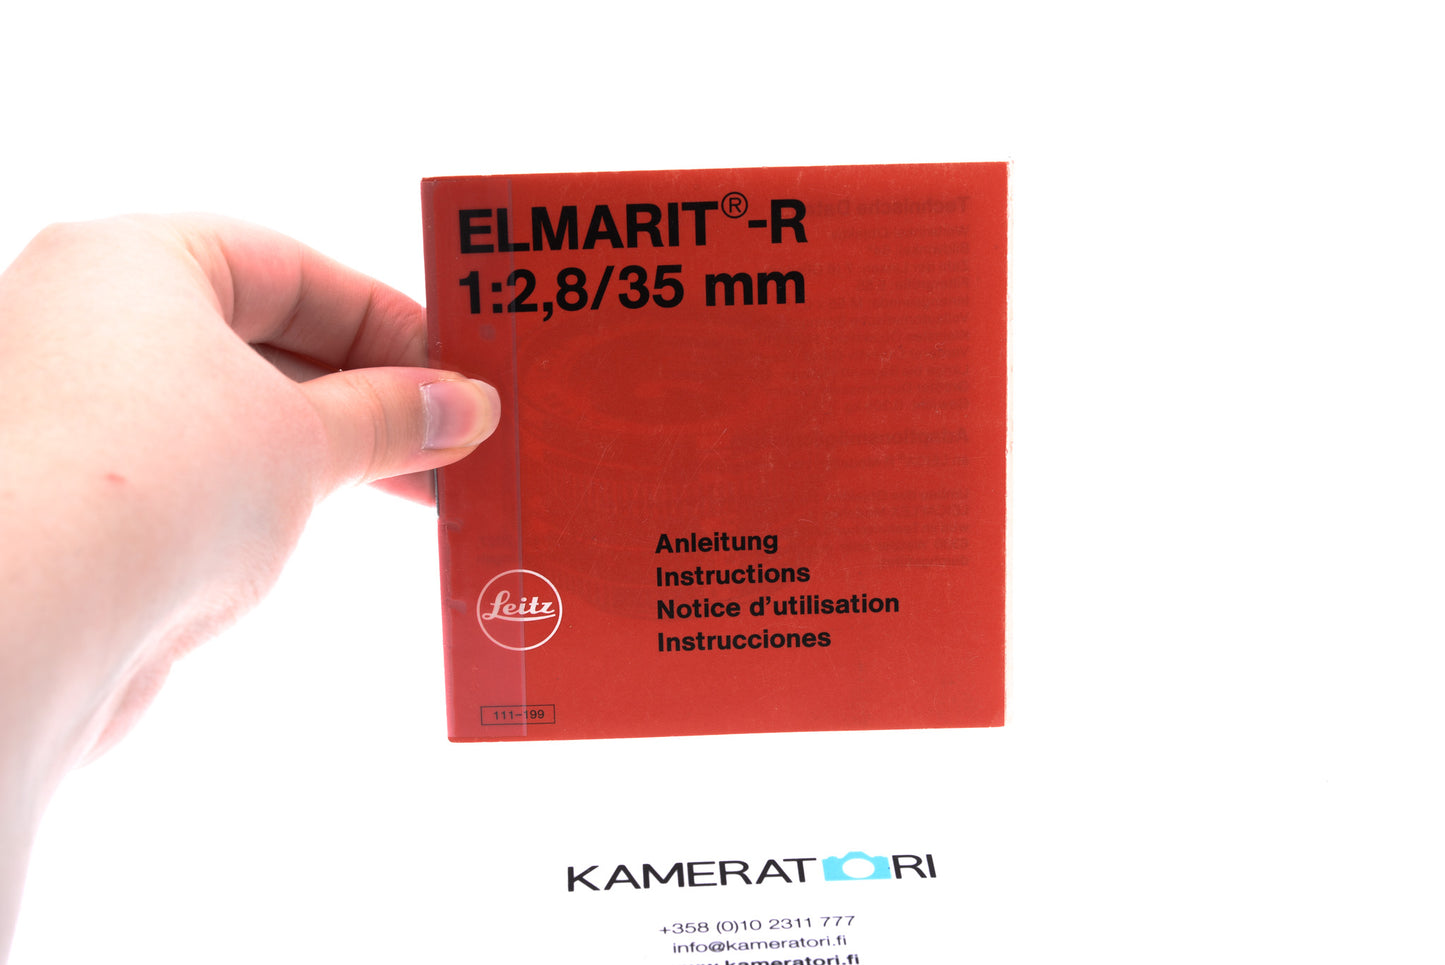 Leitz Elmarit-R 1:2,8/35mm Instruction Manual